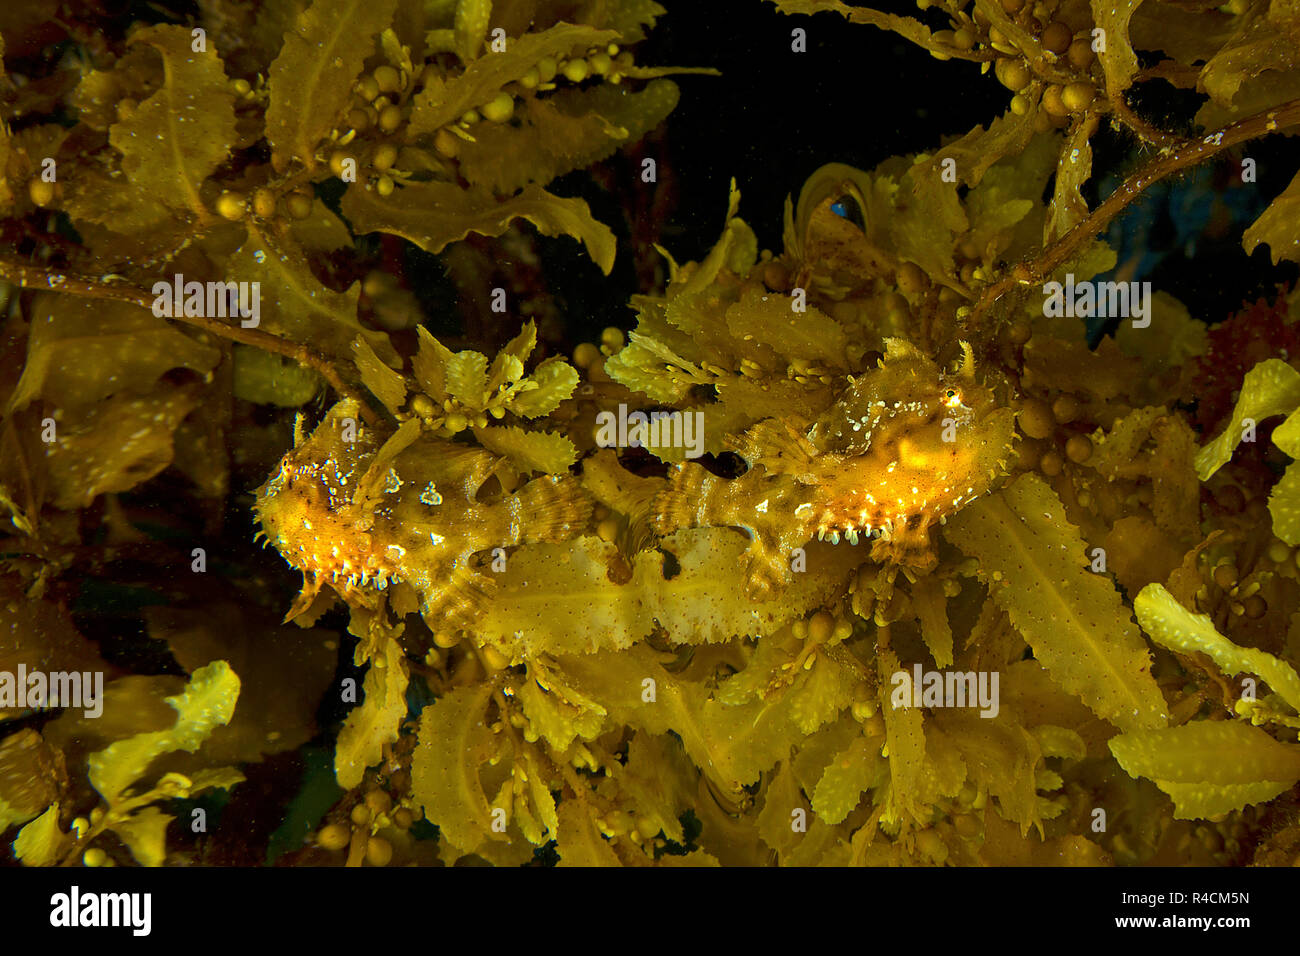 Anglerfisch oder sargassum Sargassumfish (Histiro histiro), Paar zwischen braunem Seetang (Sargassum muticum), Cenderawasih, Irian Jaya, Indonesien Stockfoto